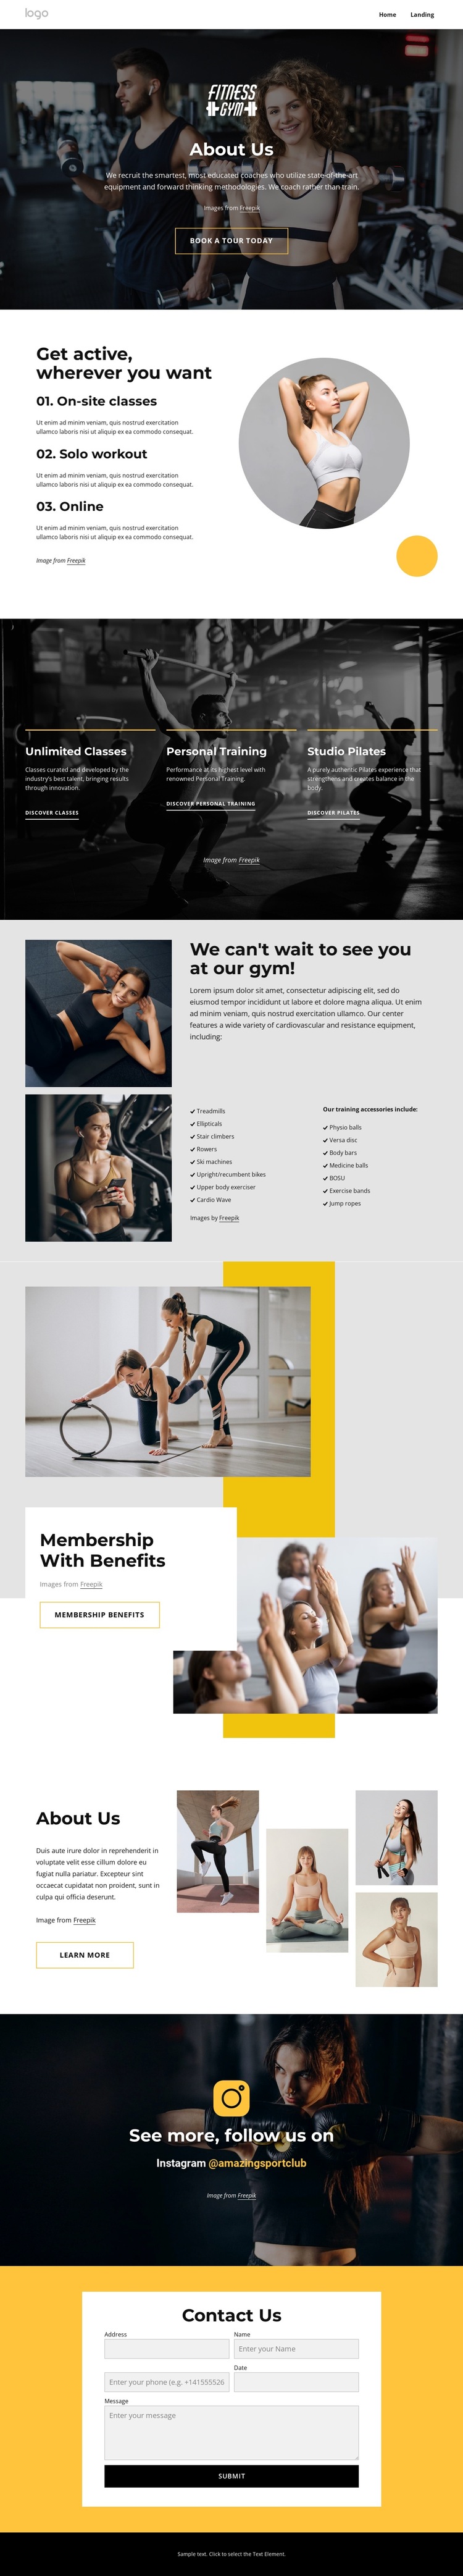 Sport and wellness center HTML5 Template